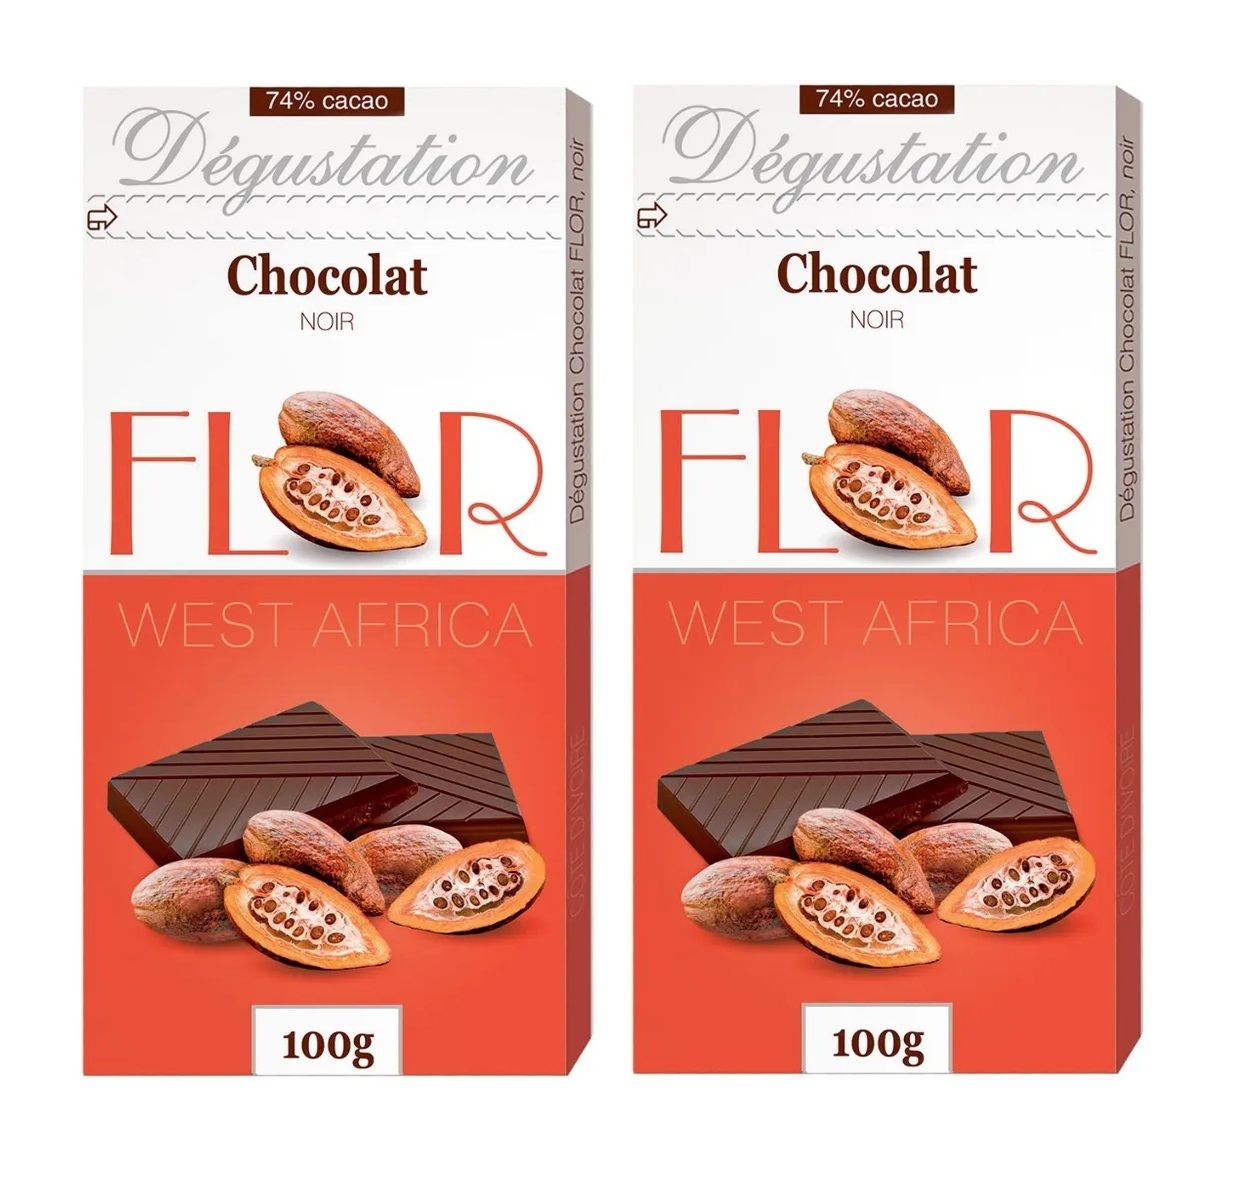 Шоколад флор. Французский шоколад Флор. Шоколадка Flor. Шоколад Flor производитель.